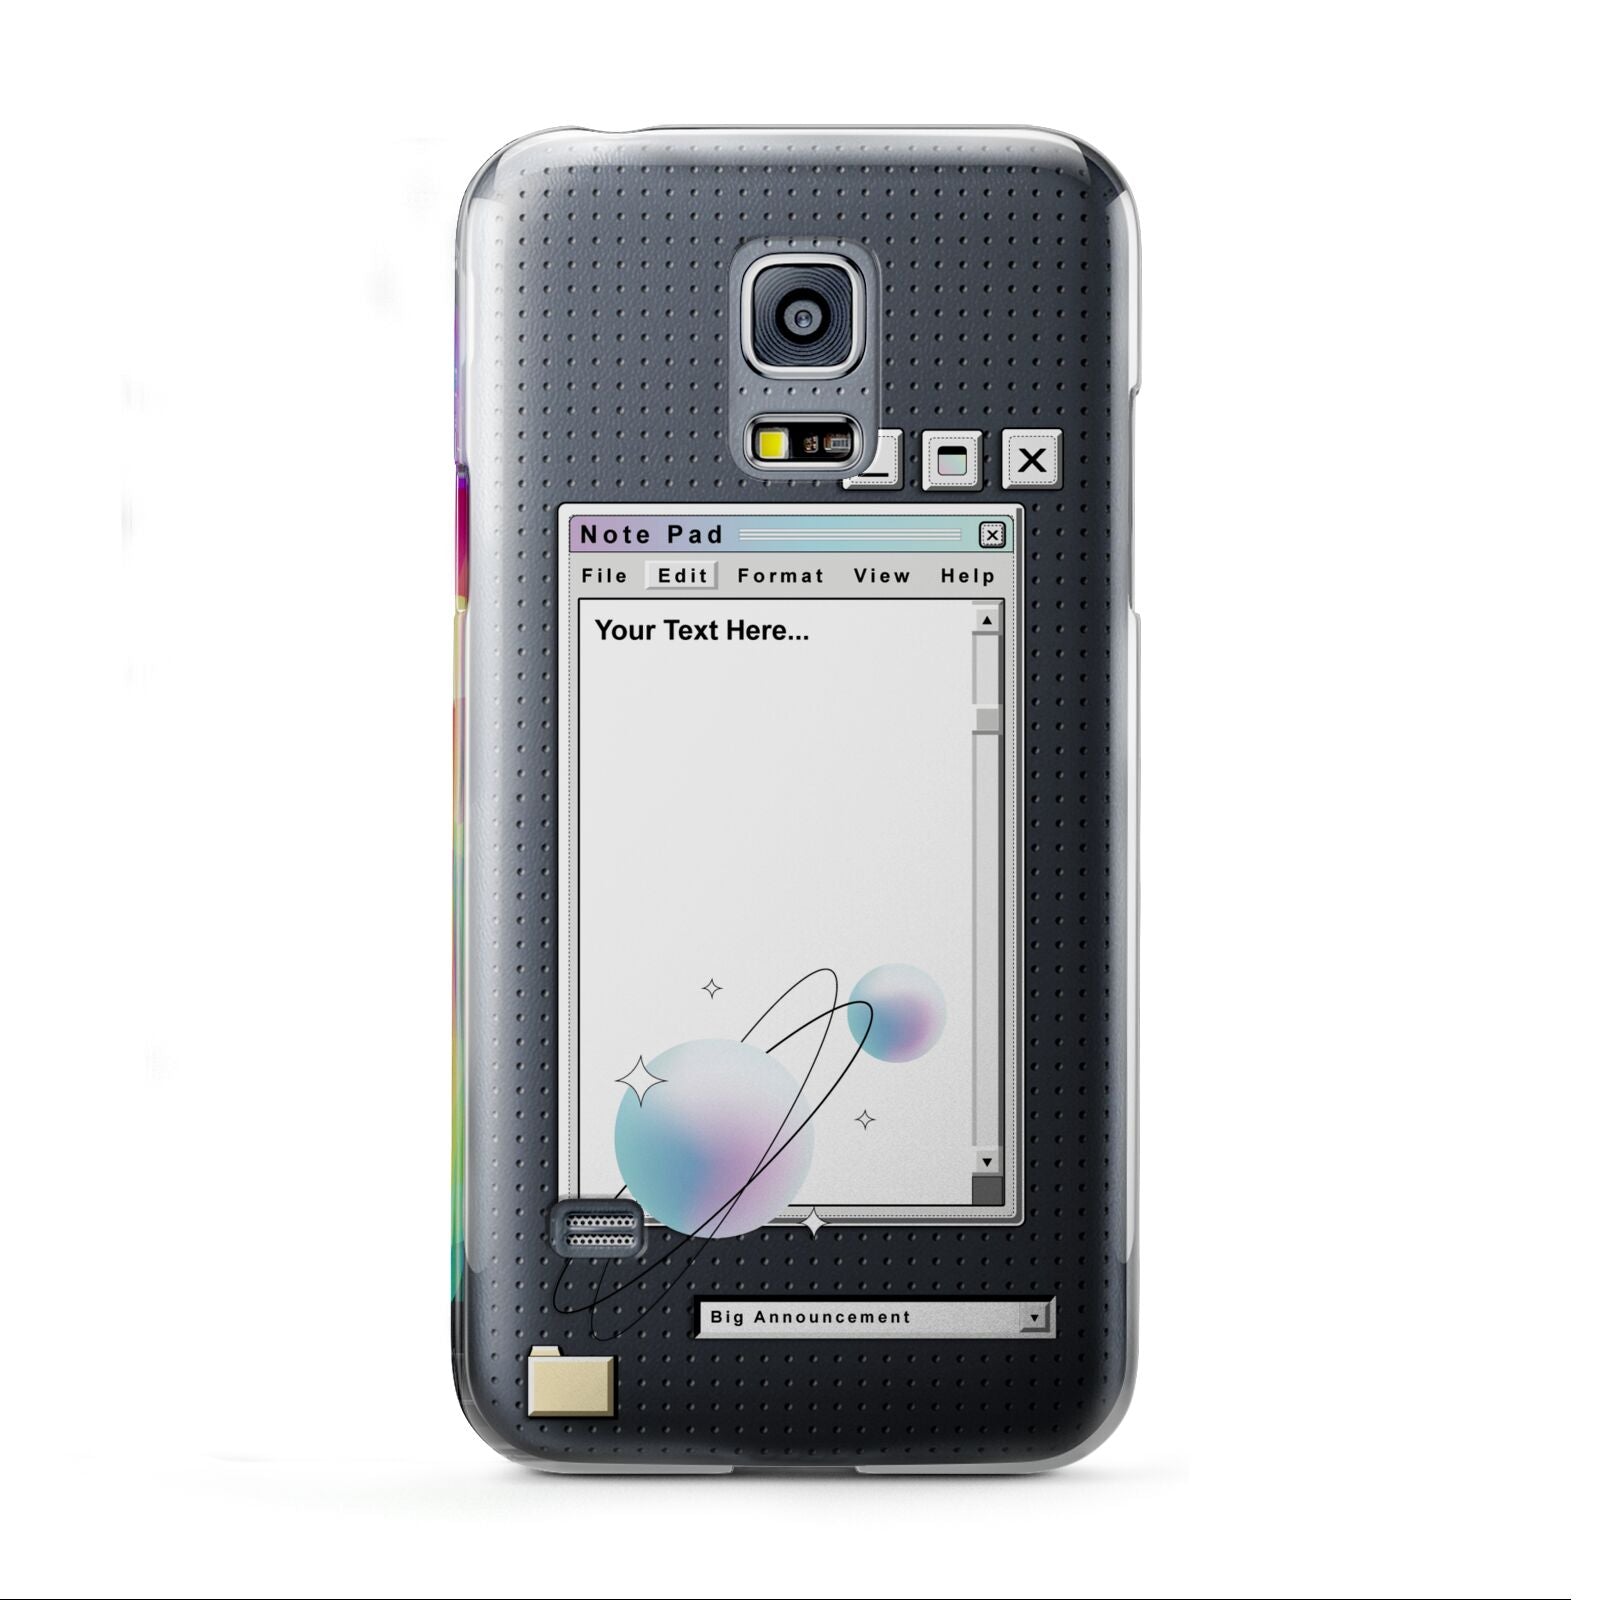 Retro Note Pad Samsung Galaxy S5 Mini Case